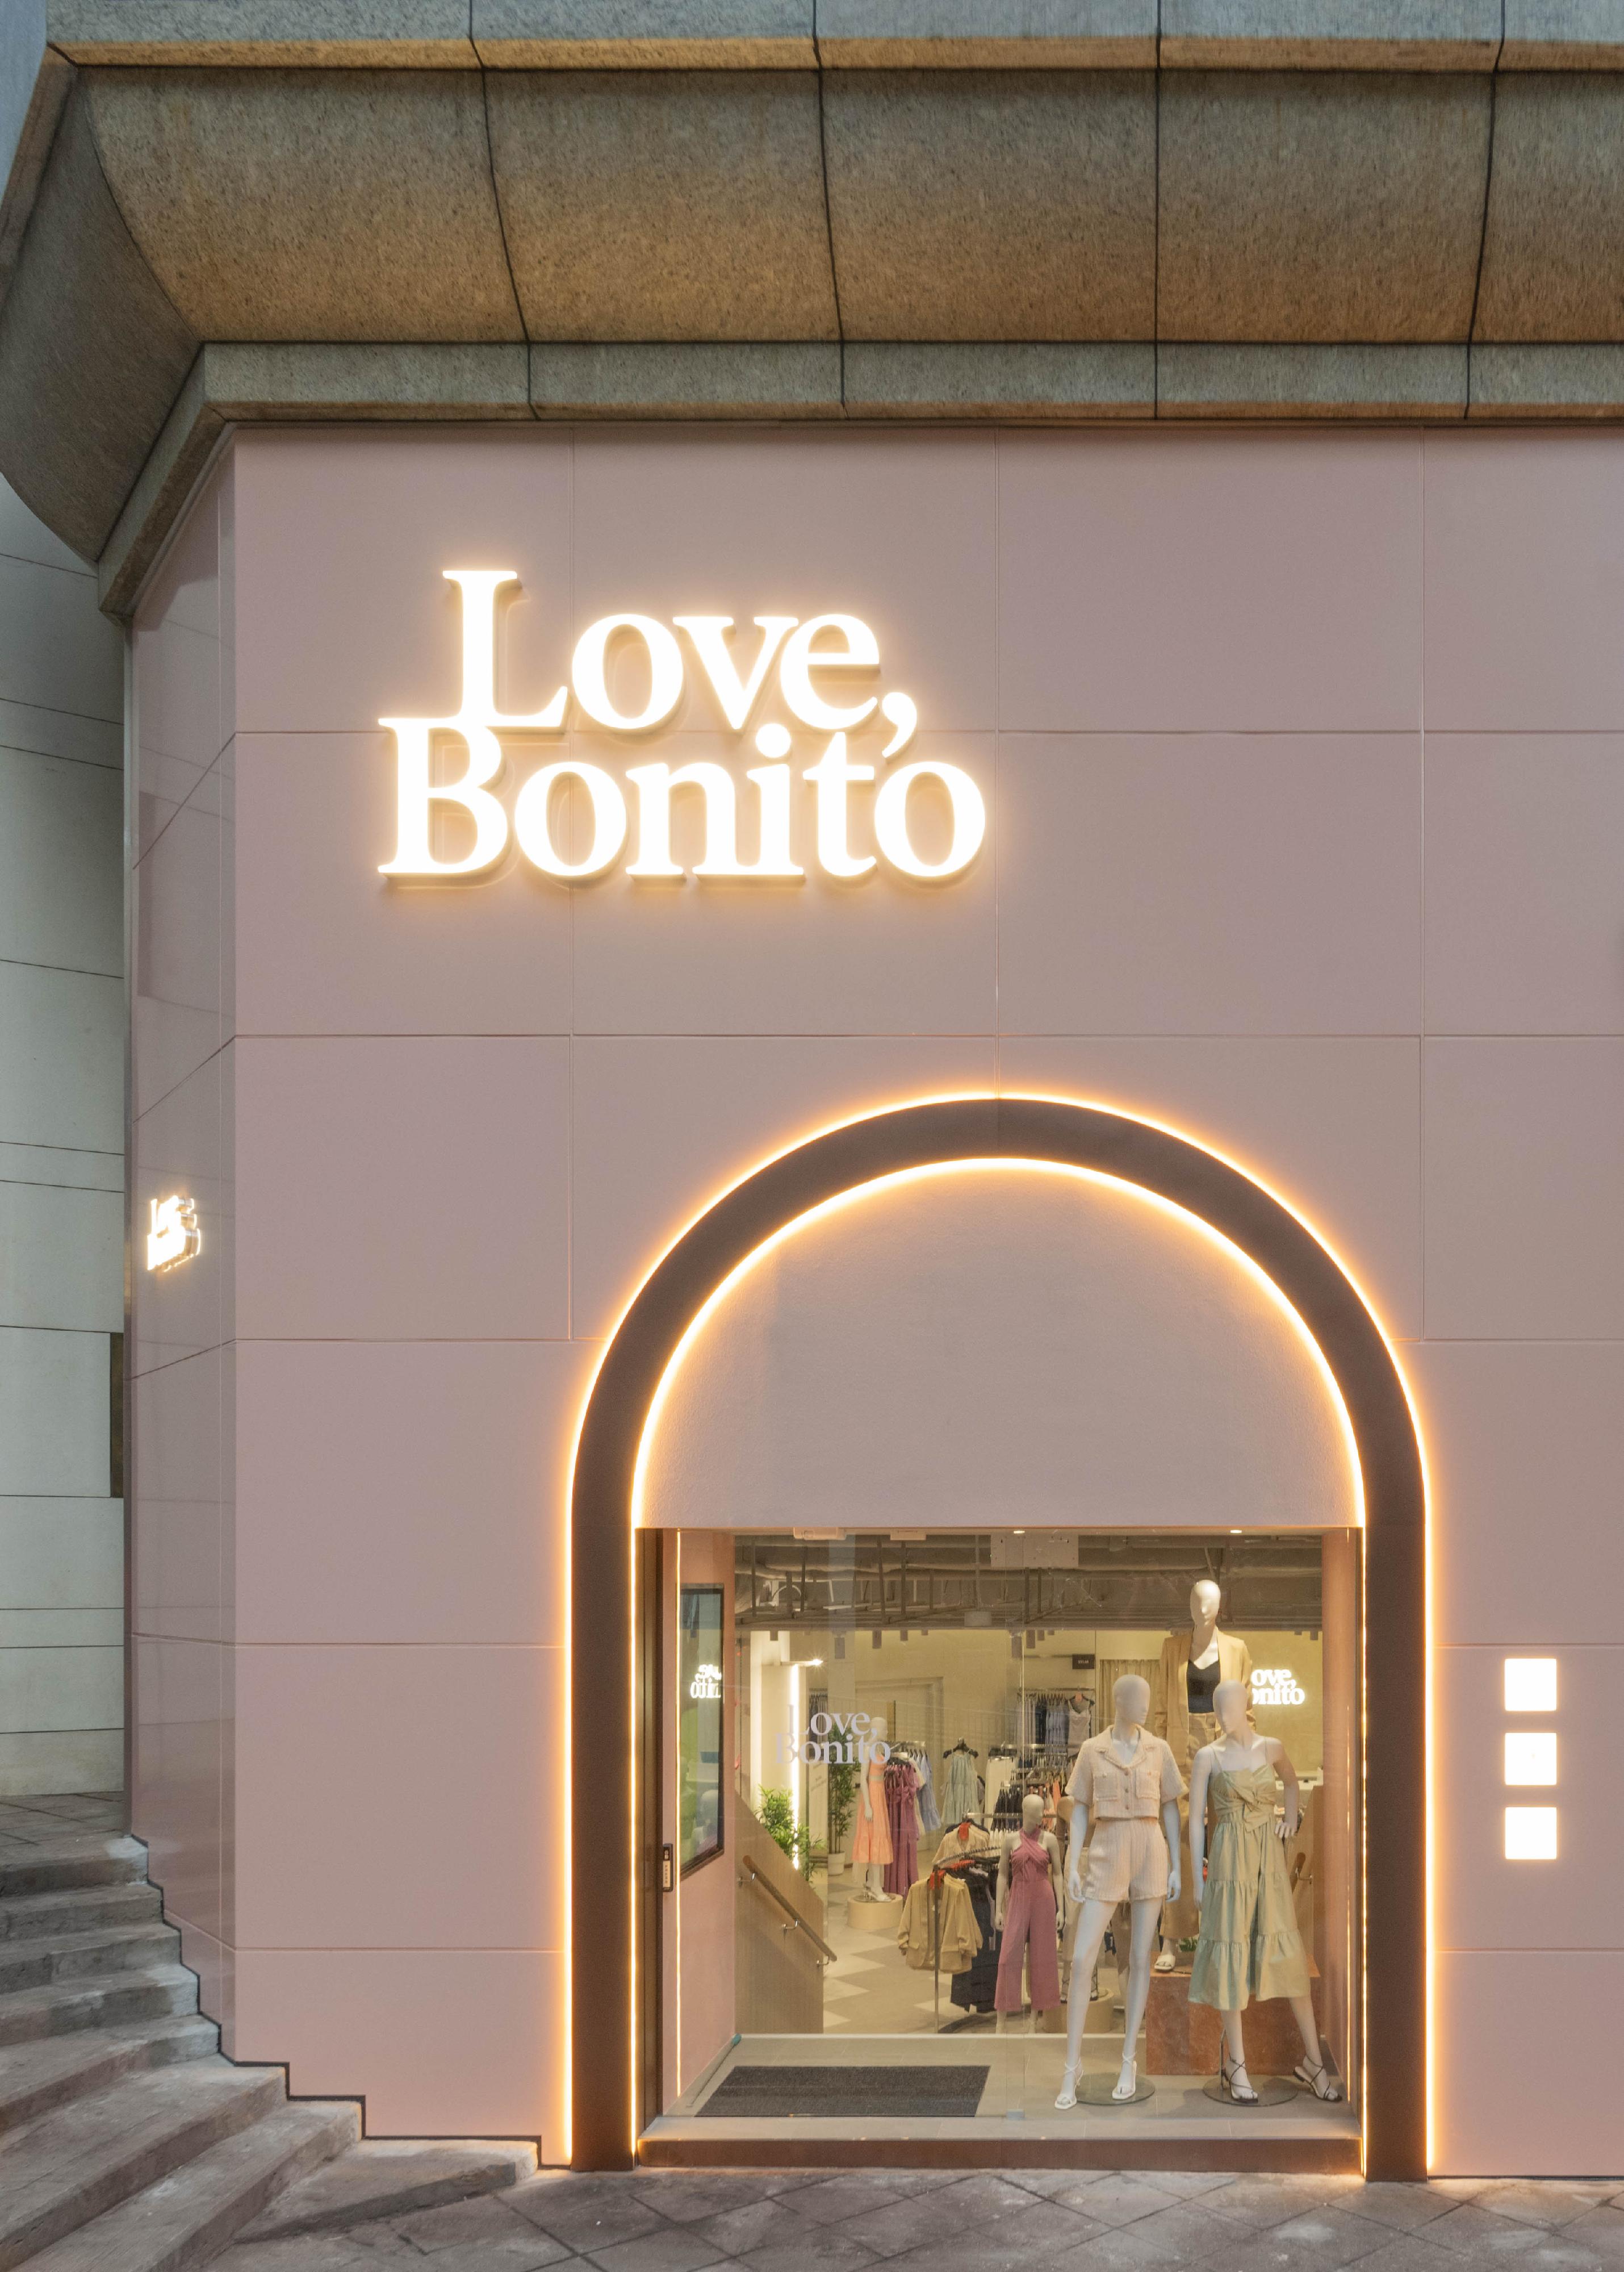 東南亞領先女裝品牌Love,Bonito在香港開設的旗艦店今日（七月二十二日）正式開幕。圖示其在中環的新旗艦店。
